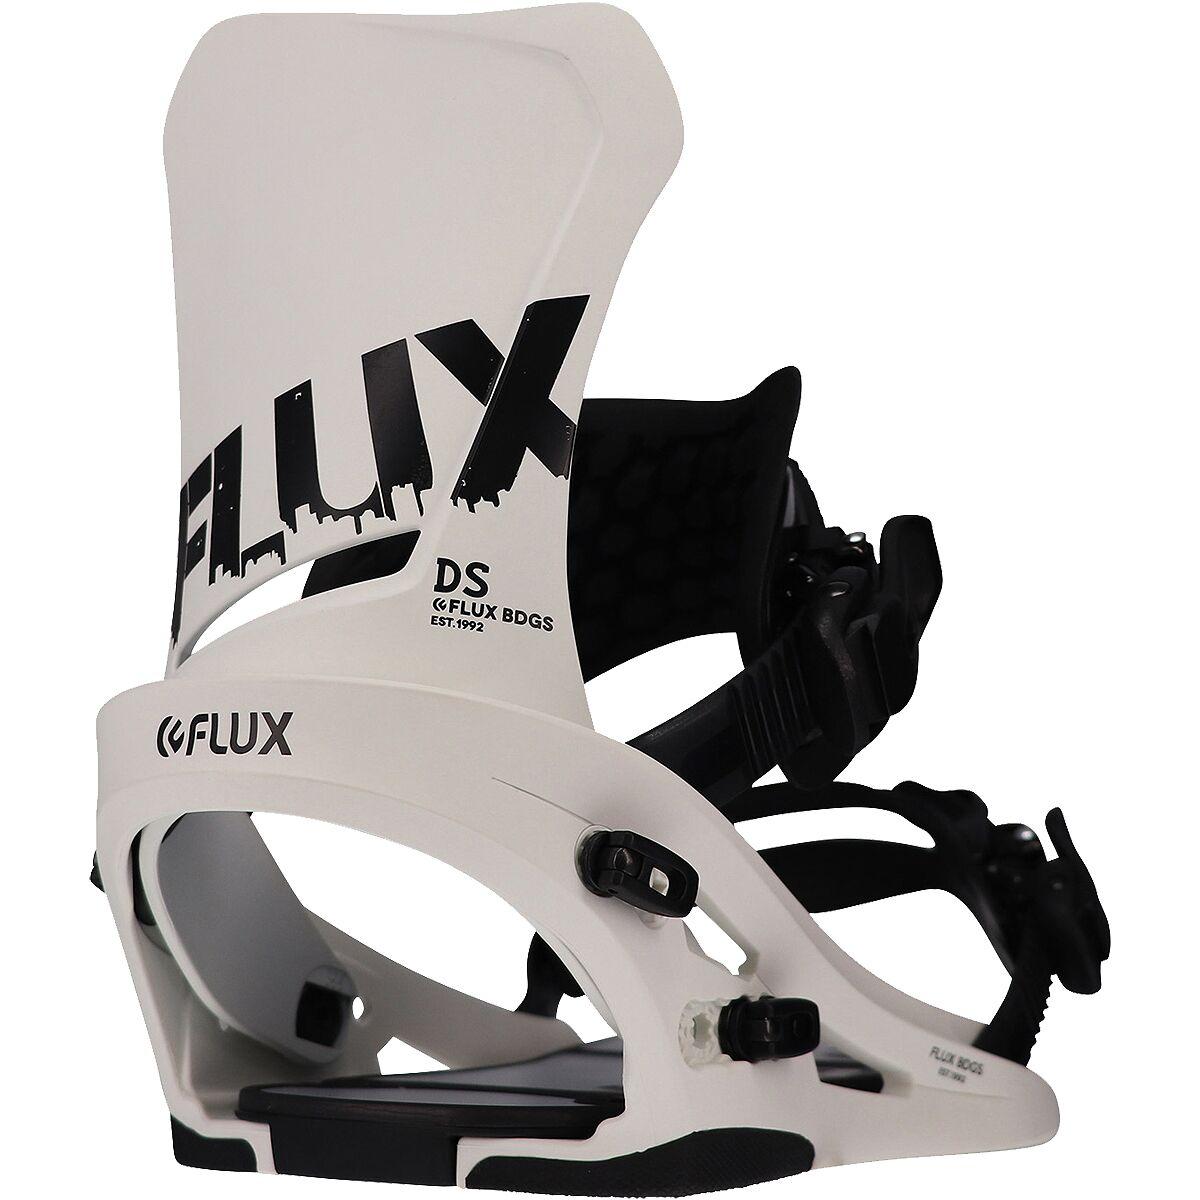 Flux DS Snowboard Bindings